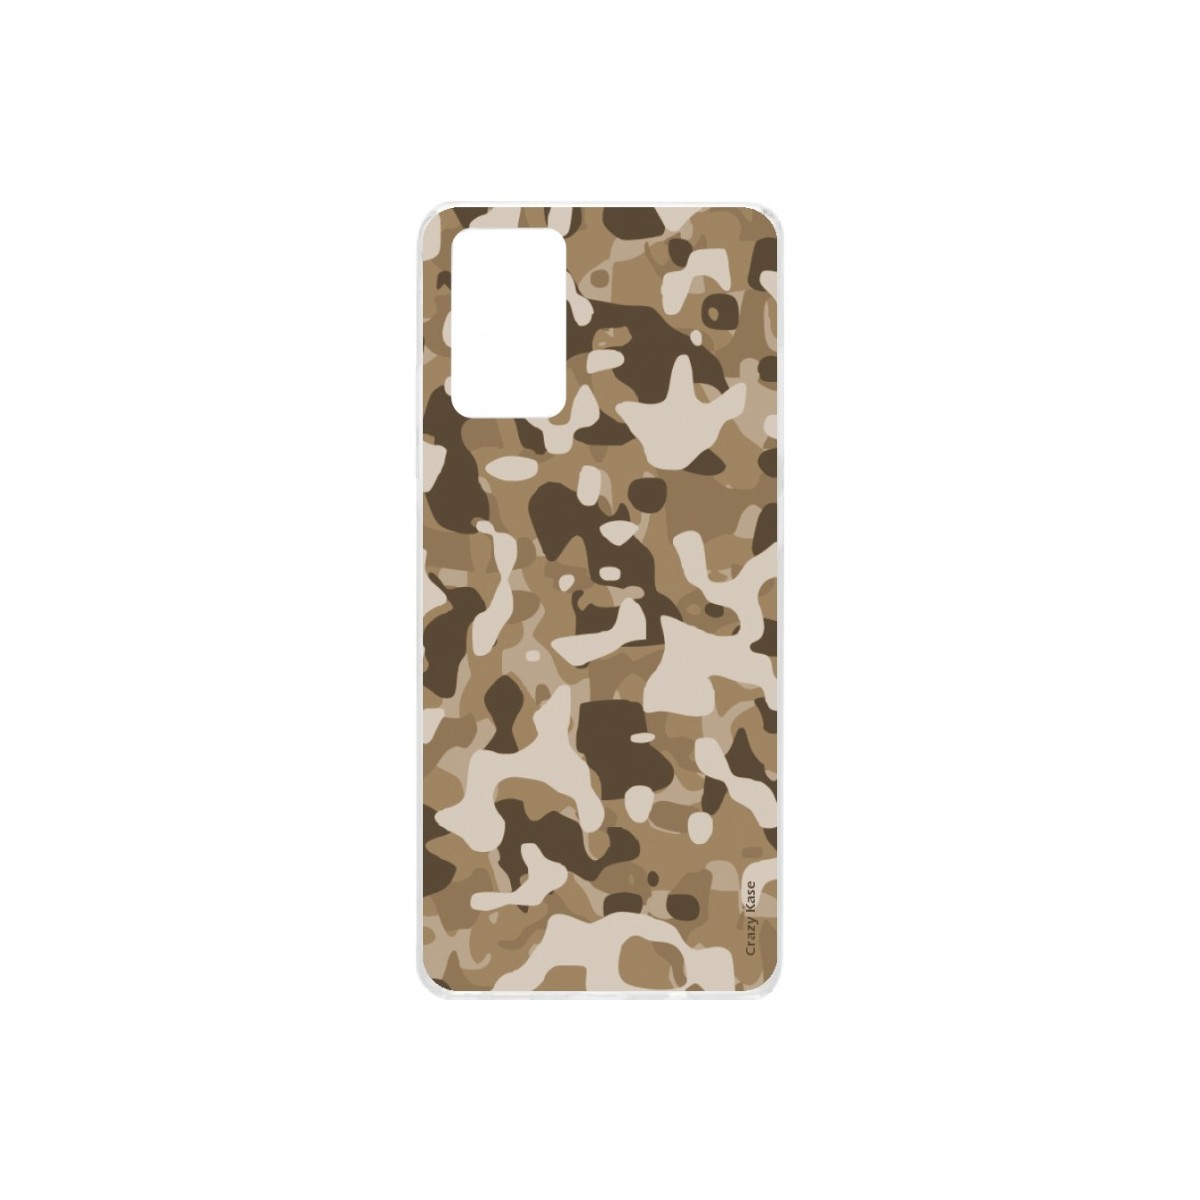 Coque Samsung Galaxy S20 Plus souple Camouflage militaire désert Crazy Kase